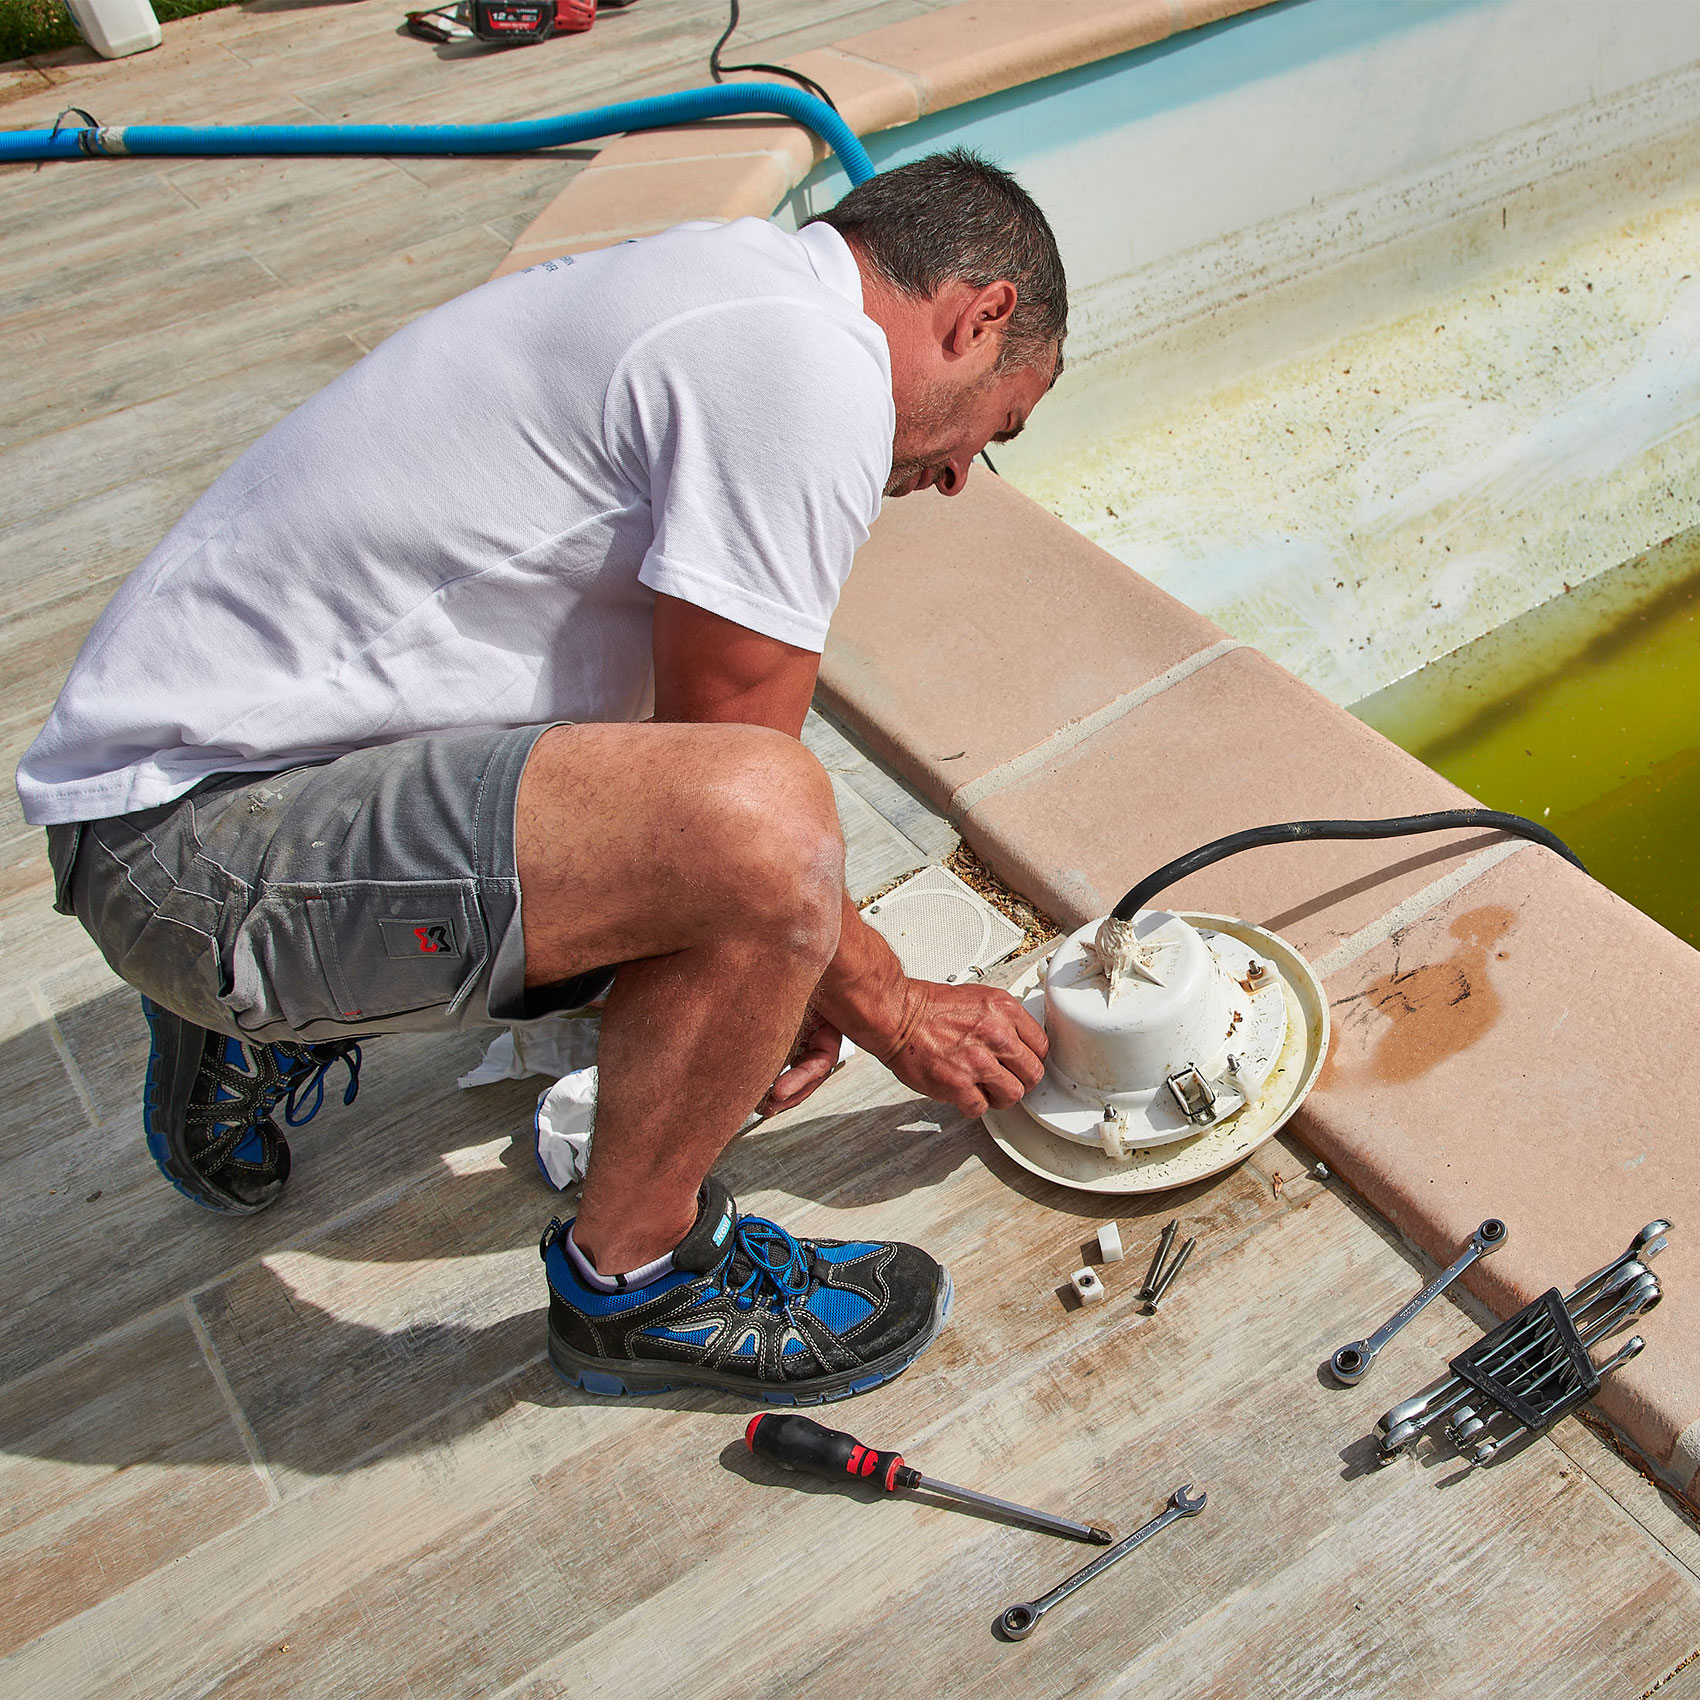 Homme réparant une pompe de piscine avec des outils à côté sur une terrasse ensoleillée.